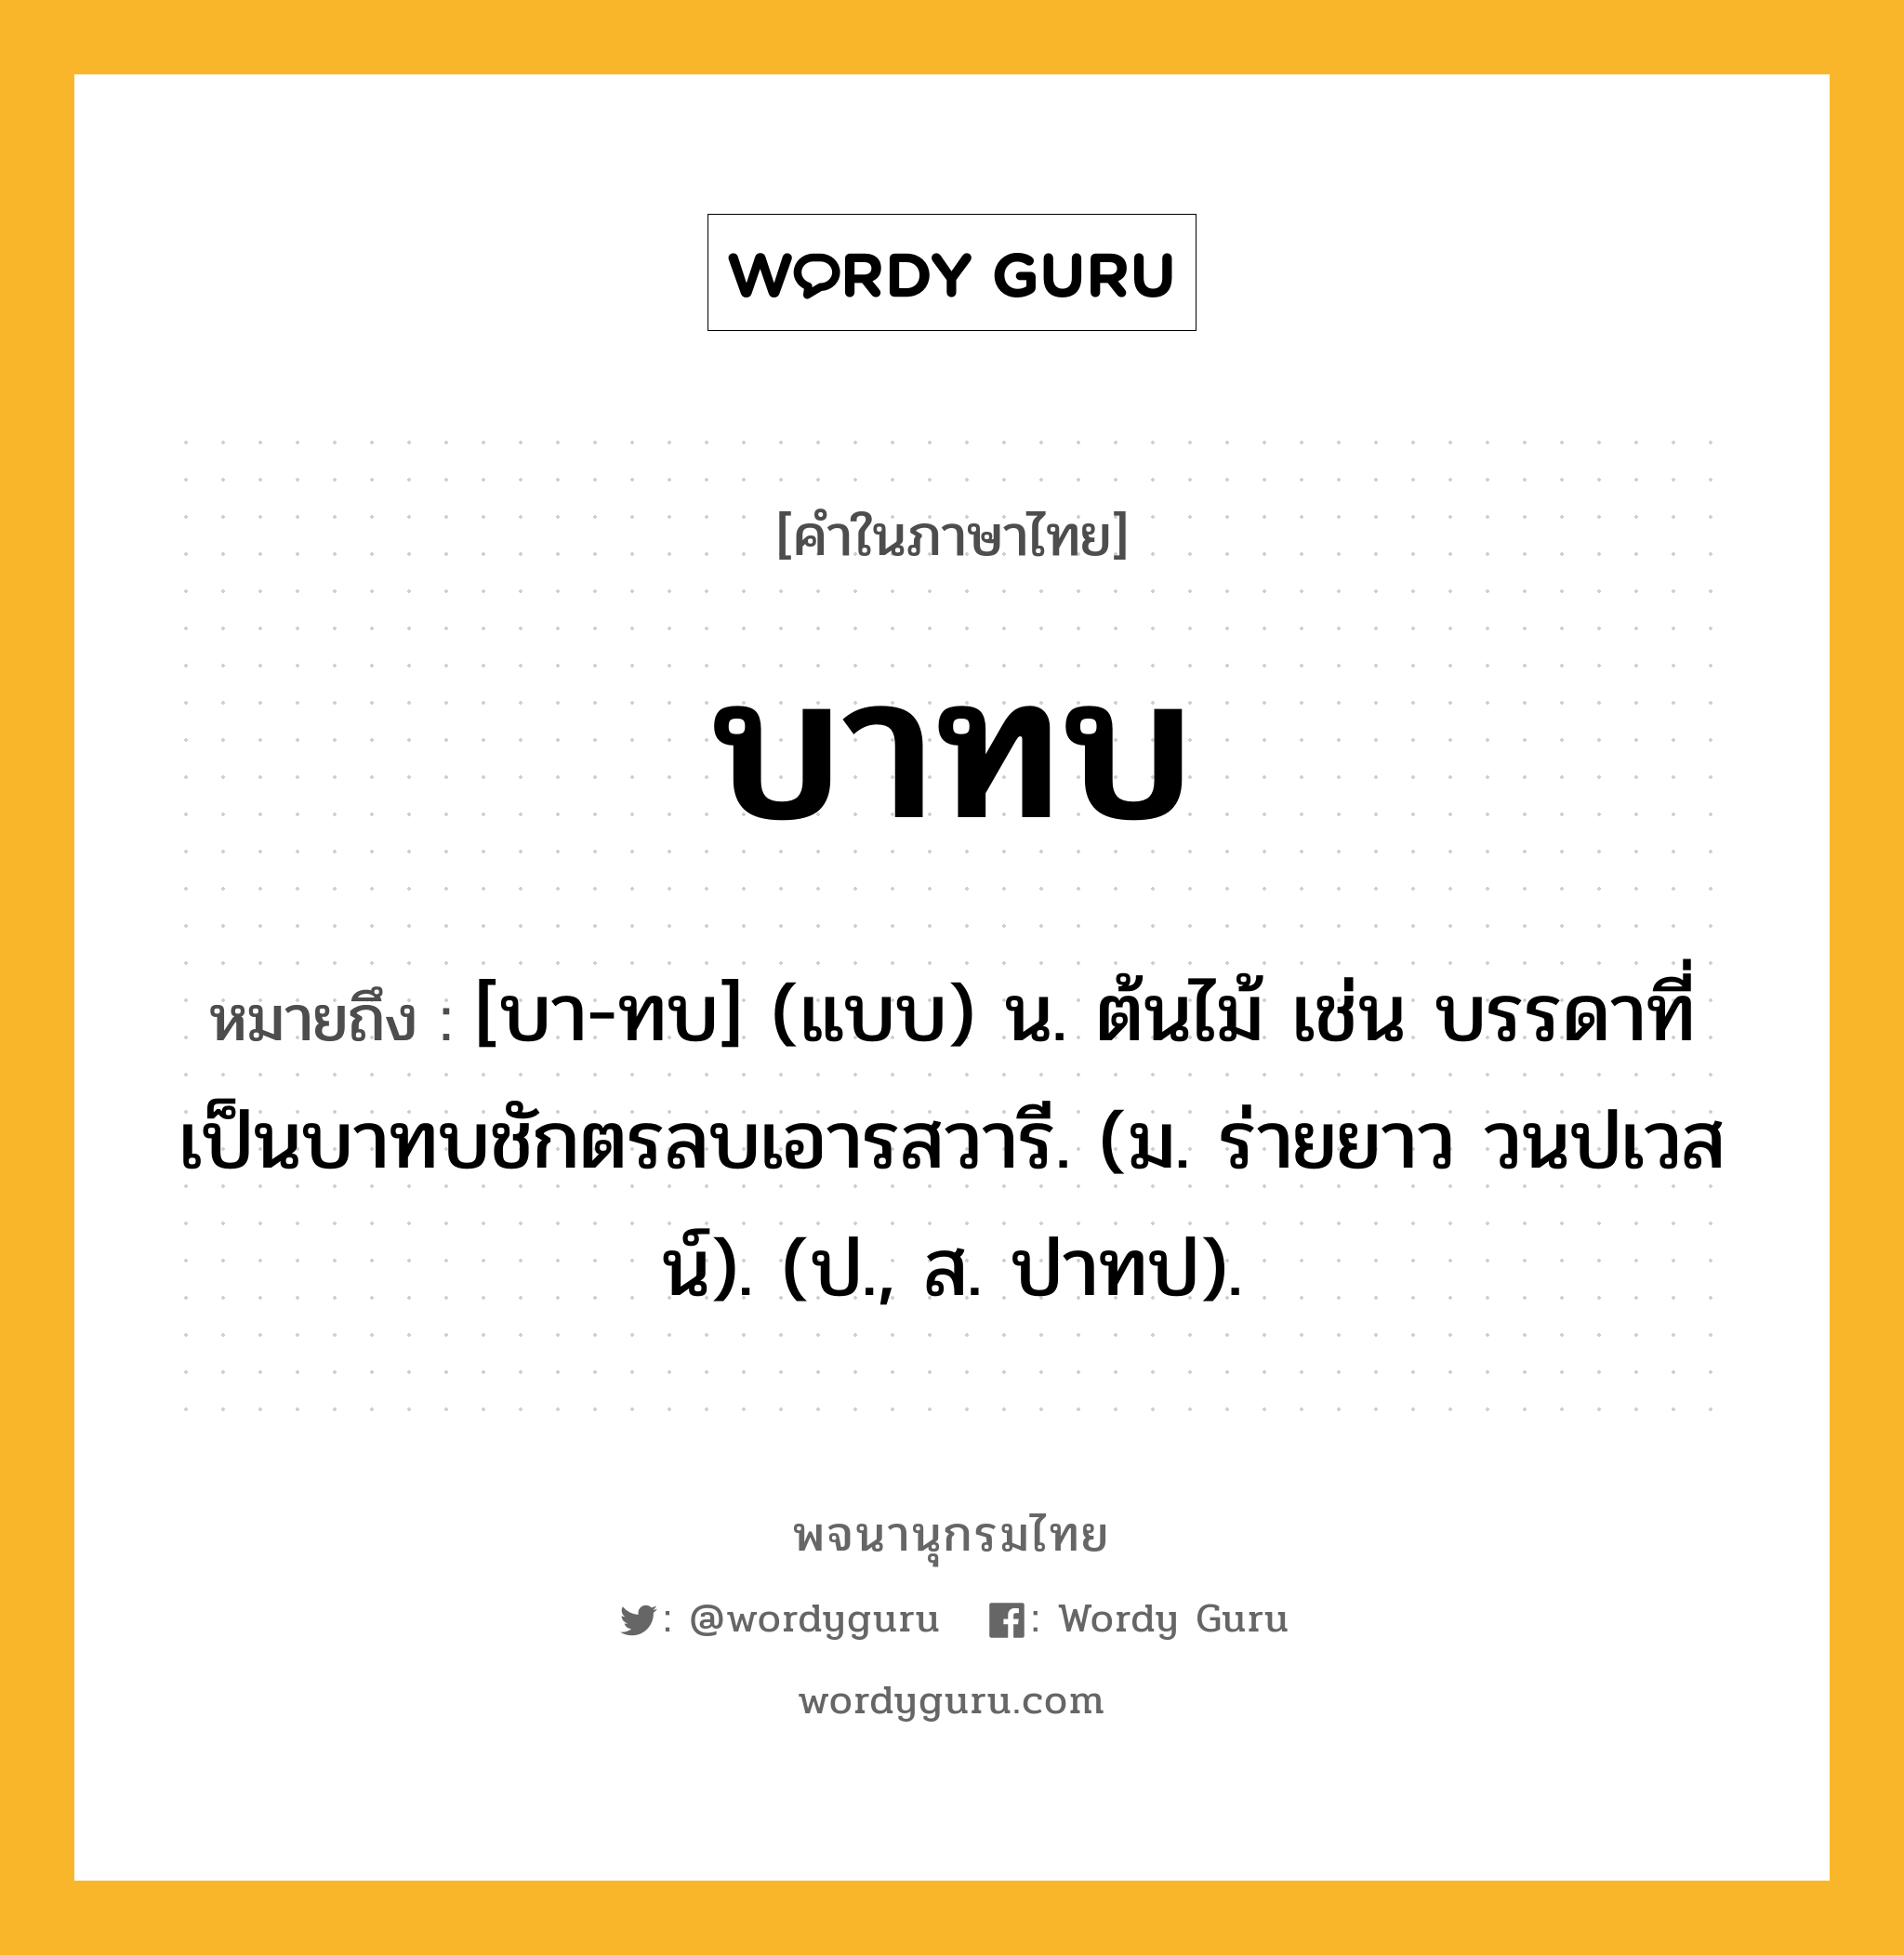 บาทบ หมายถึงอะไร?, คำในภาษาไทย บาทบ หมายถึง [บา-ทบ] (แบบ) น. ต้นไม้ เช่น บรรดาที่เป็นบาทบชักตรลบเอารสวารี. (ม. ร่ายยาว วนปเวสน์). (ป., ส. ปาทป).